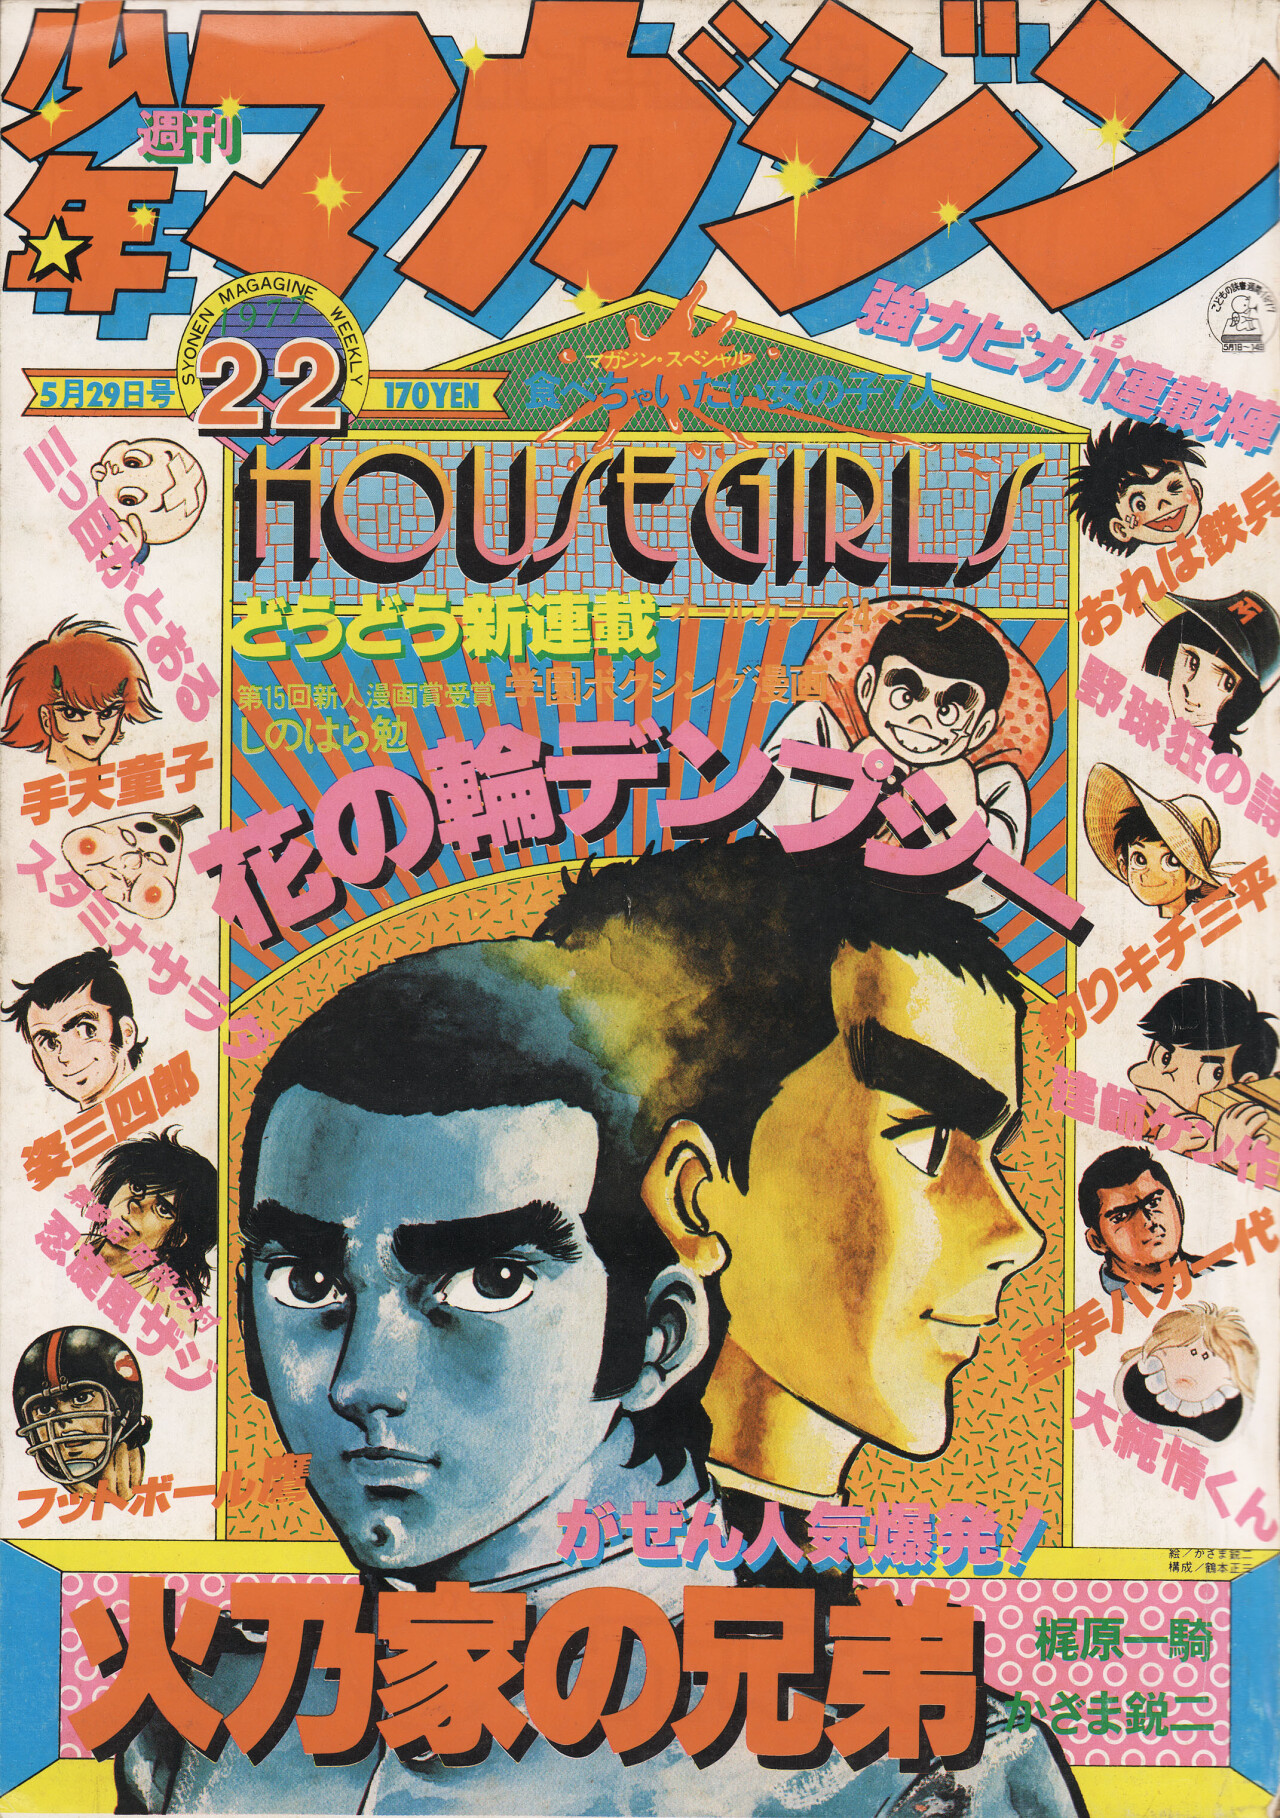 Дом (House, 1977), режиссёр Нобухико Обаяси, японский постер к фильму (ужасы, 1977 год)_1